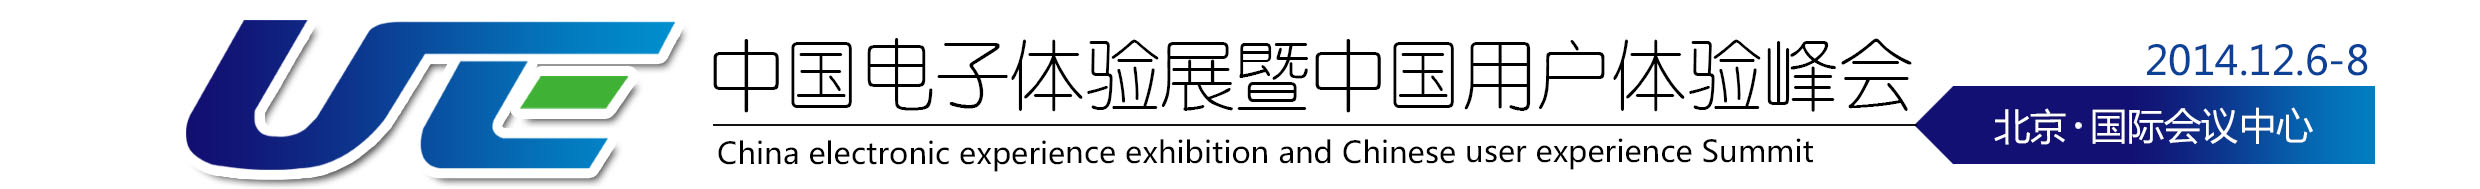 2014第二届中国电子体验展暨中国用户体验峰会